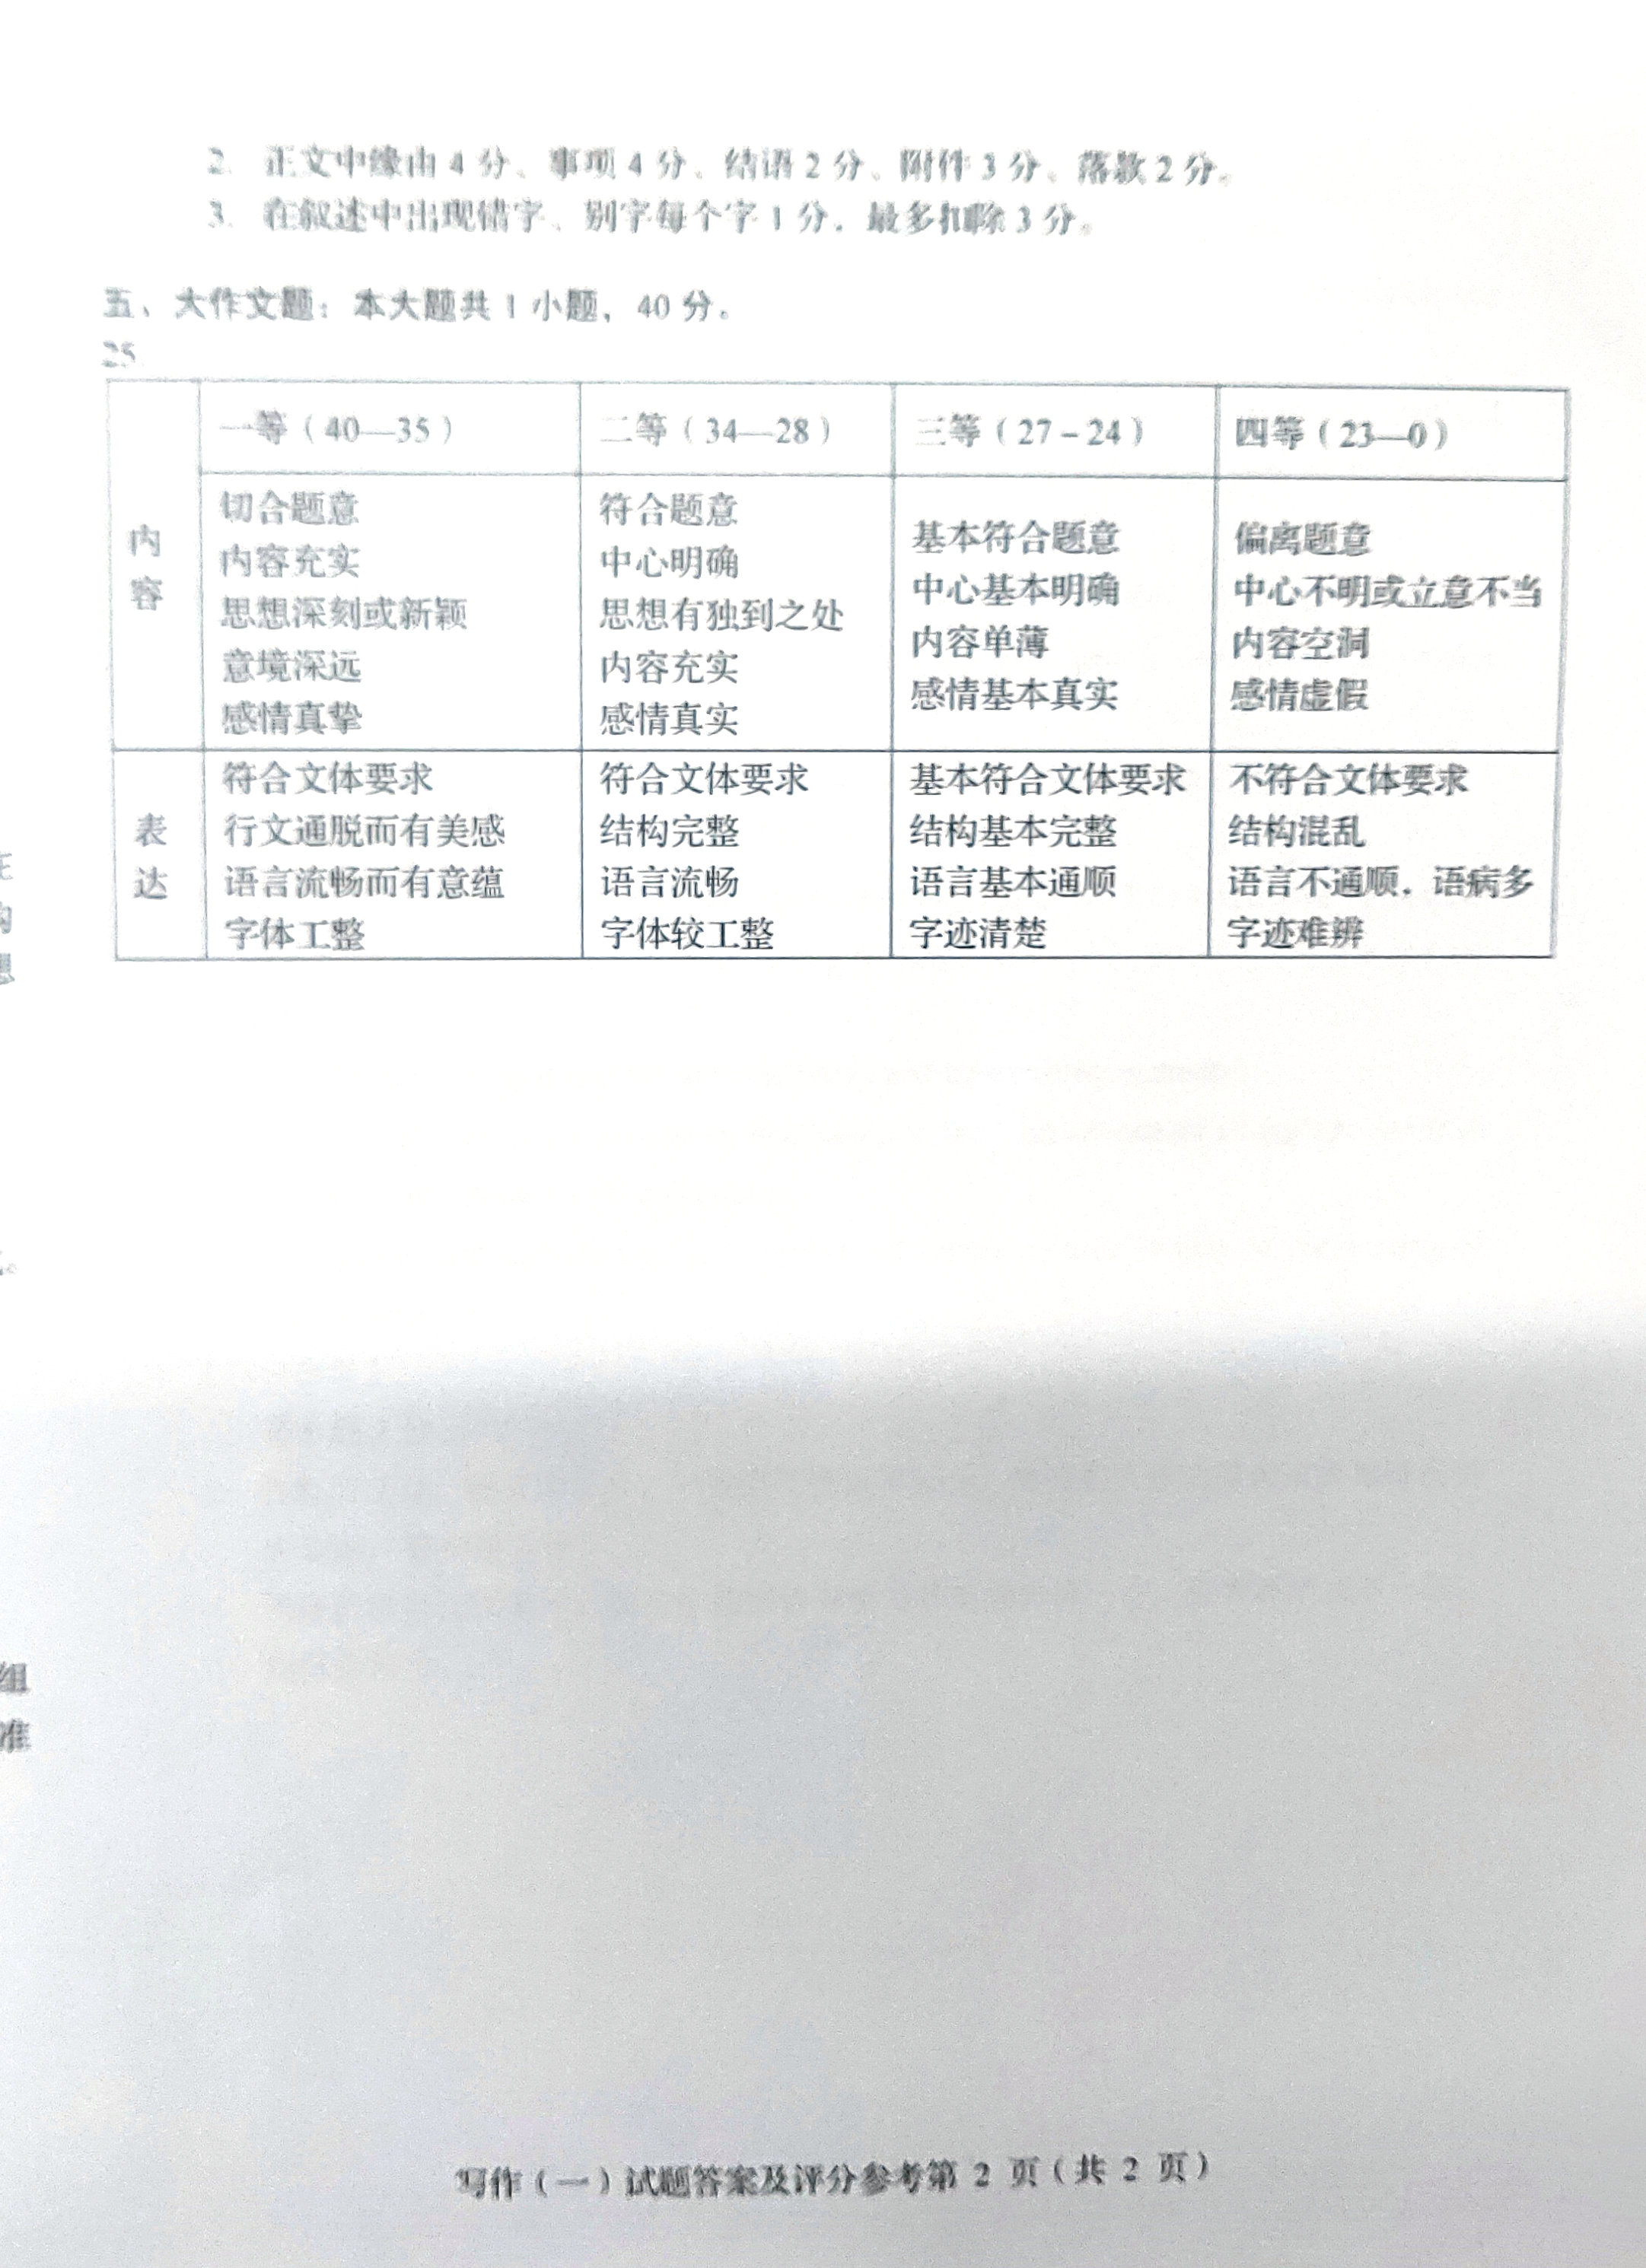 贵州省2019年04月自学考试00506写作（一）真题及答案